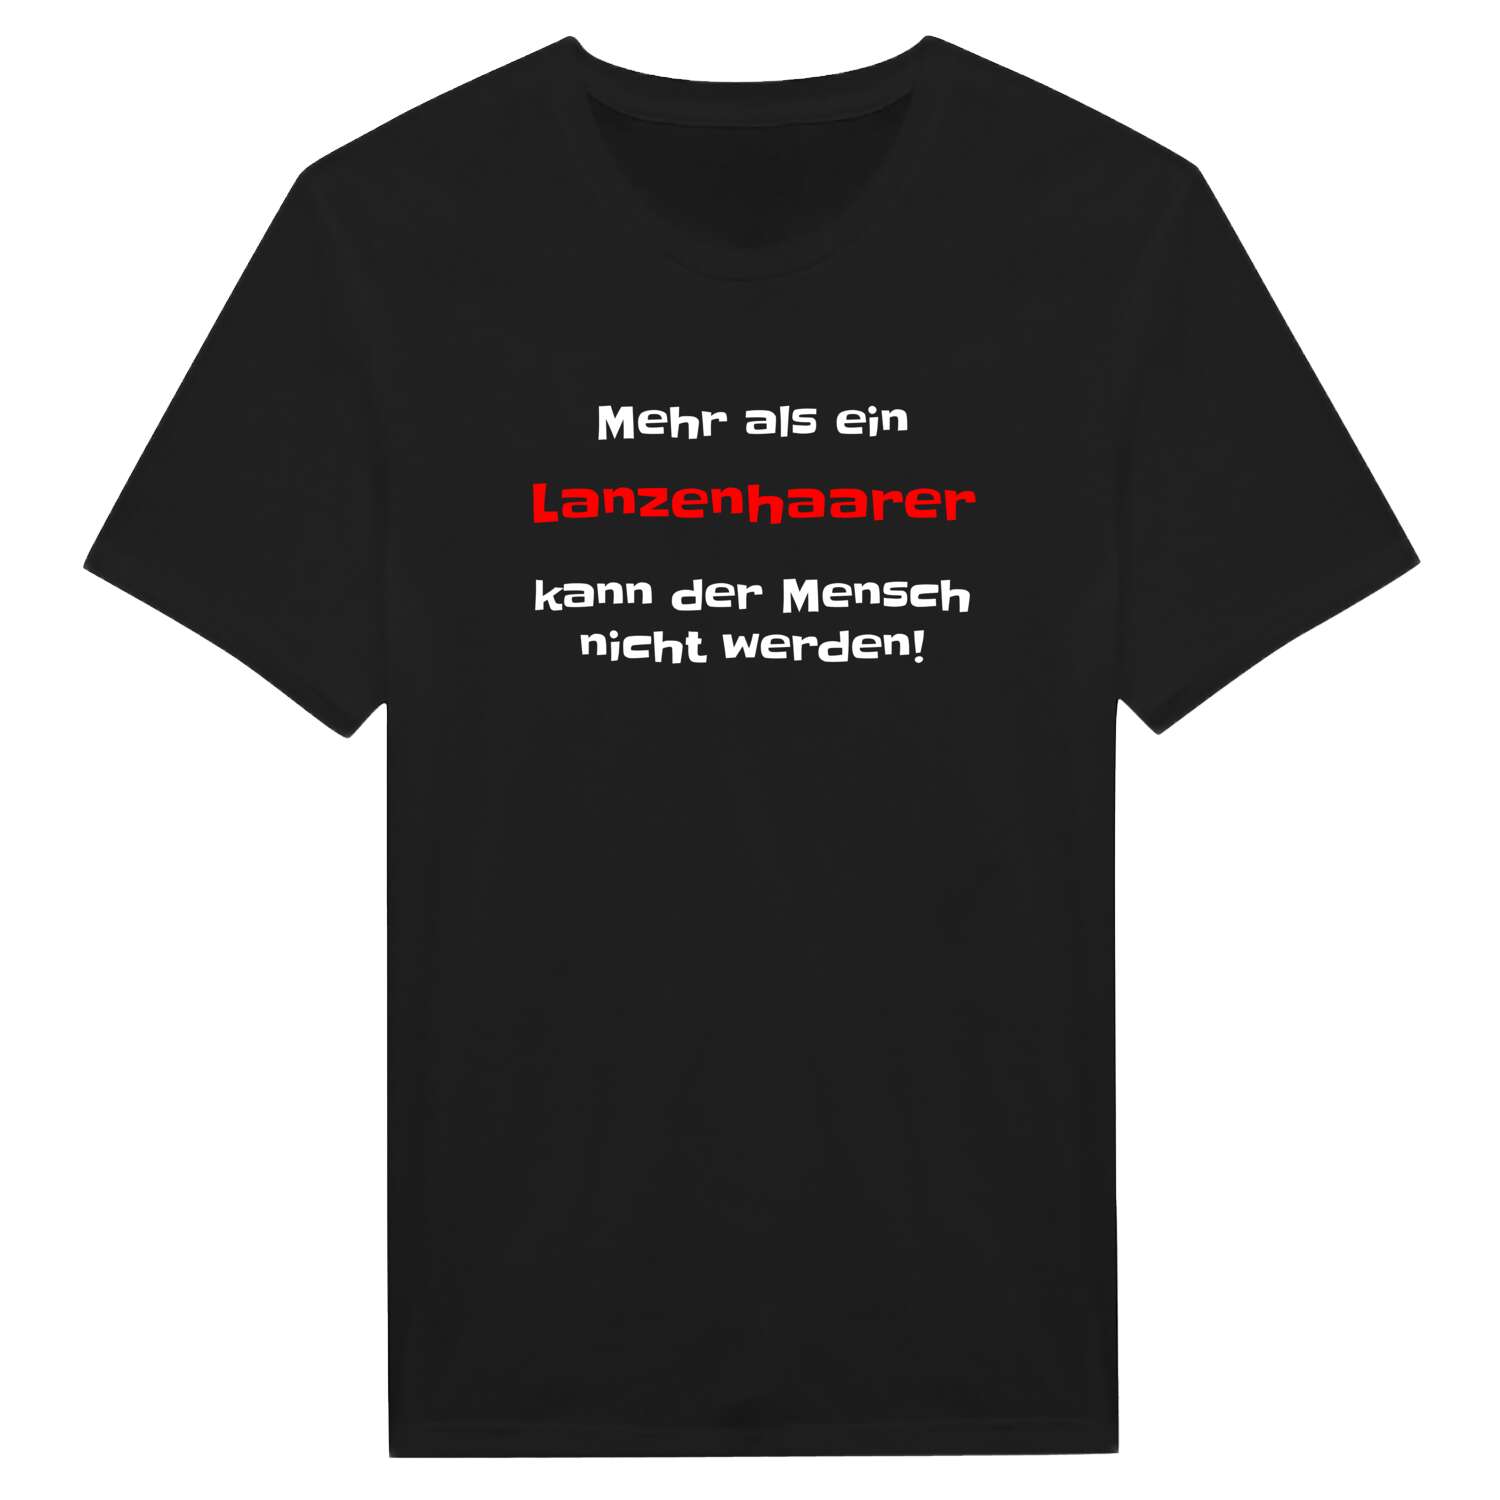 Lanzenhaar T-Shirt »Mehr als ein«